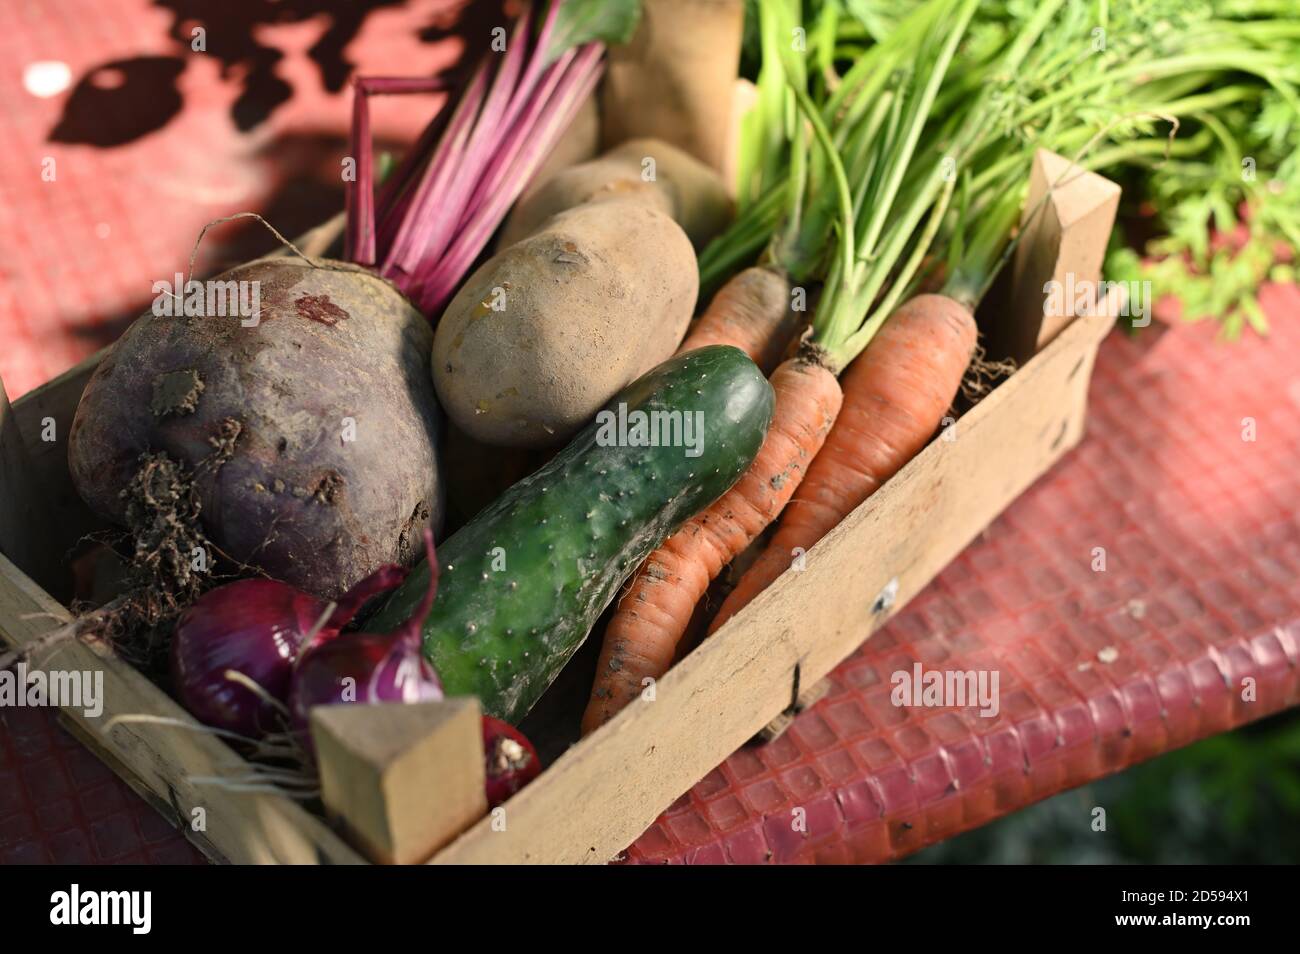 Caja de verduras con zanahorias recién recogidas, remolacha, papa, cebolla y pepino en una mesa en el jardín Foto de stock